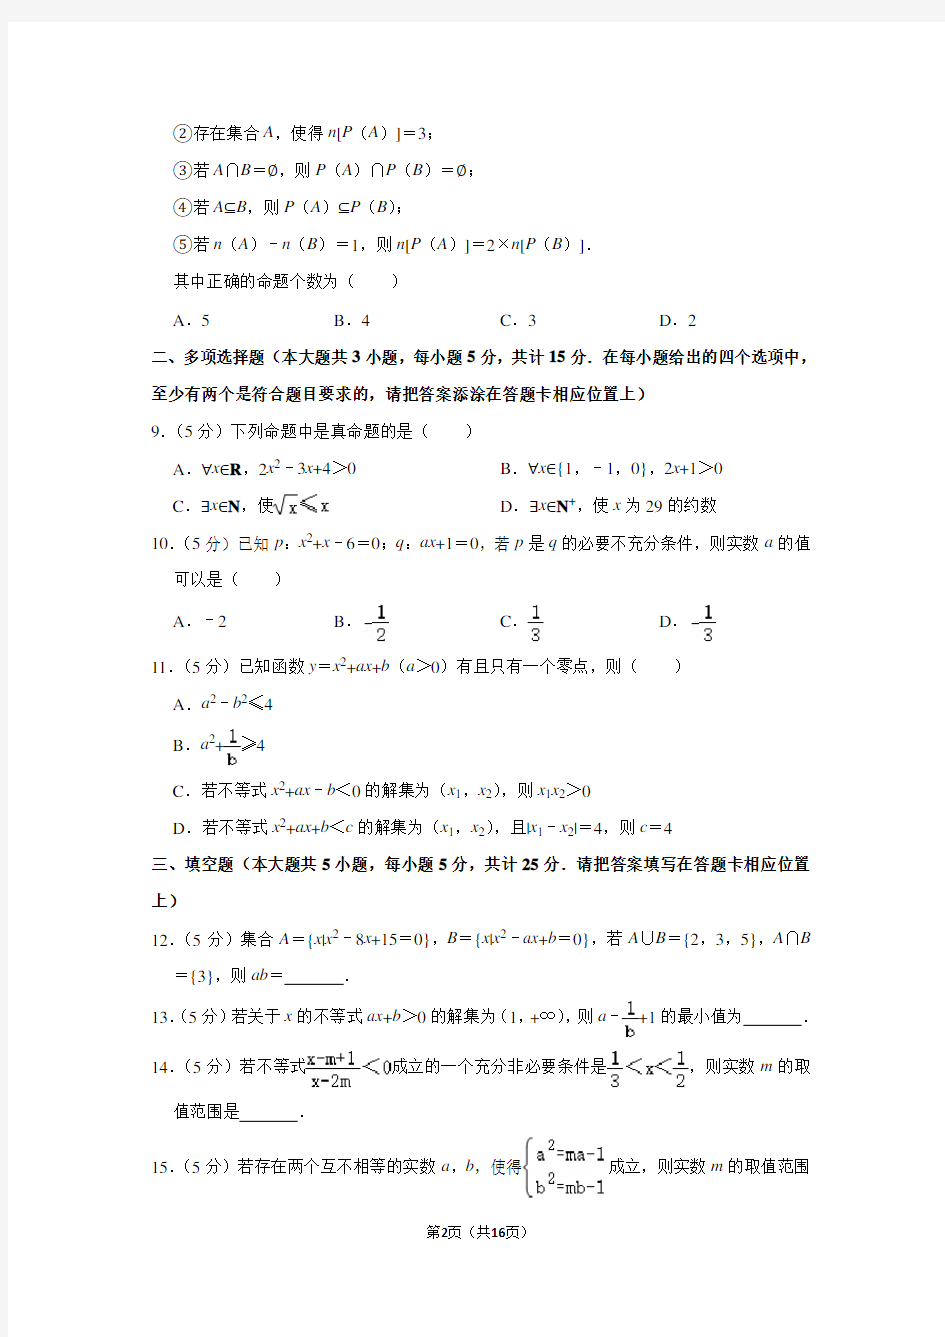 2020-2021学年江苏省南京市金陵中学高一(上)第一次月考数学试卷(10月份)及答案